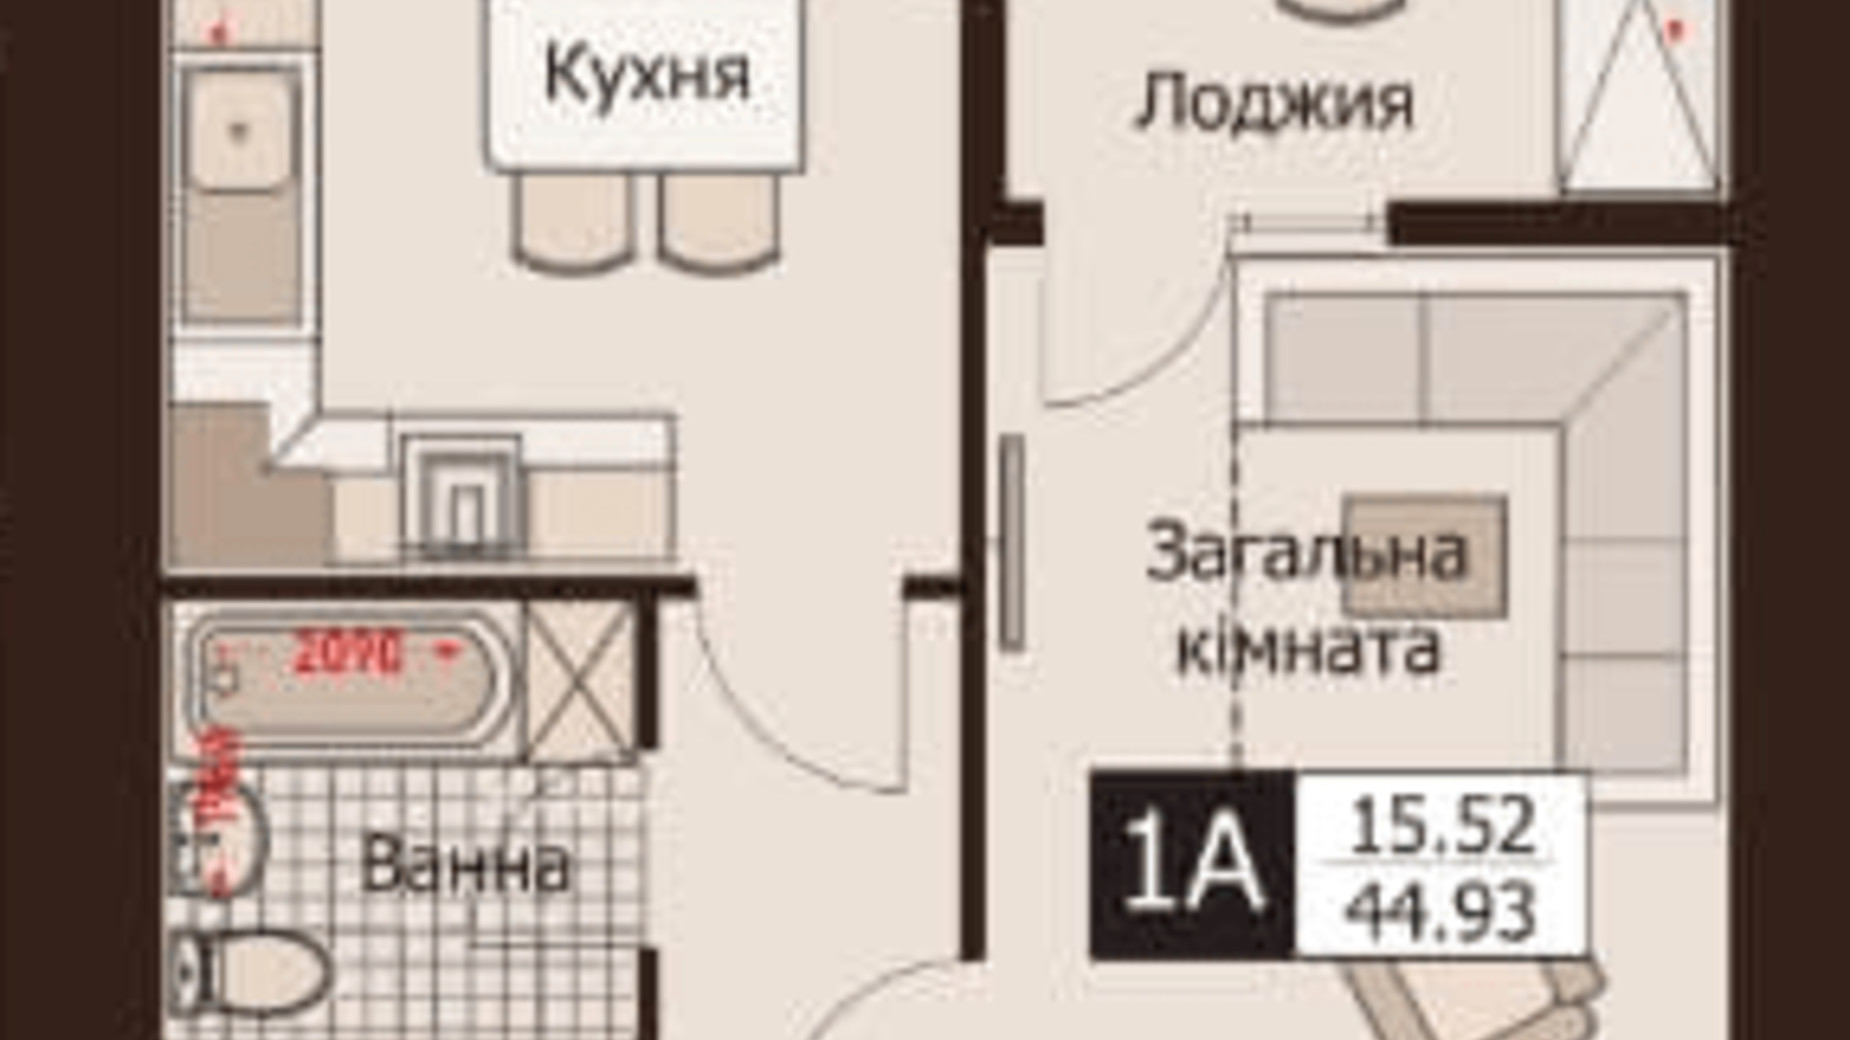 Планировка 1-комнатной квартиры в ЖК Rafinad 44.93 м², фото 495997